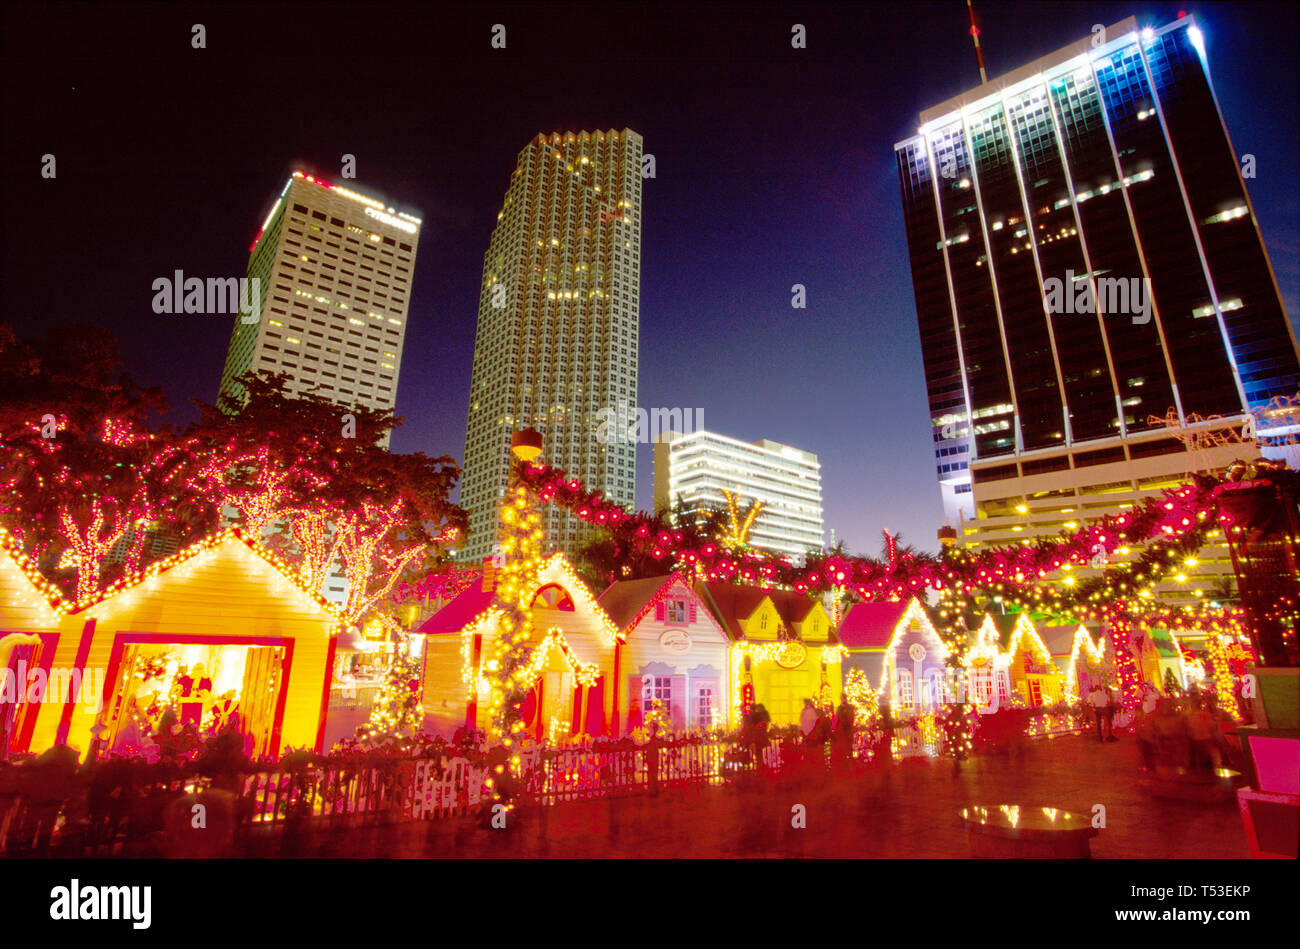 Miami Florida,Bayfront Park,area pubblica,ricreazione,prodotti di illuminazione natalizia Holiday Village,esposizione skyline della città,centro,centro città,edificio Foto Stock